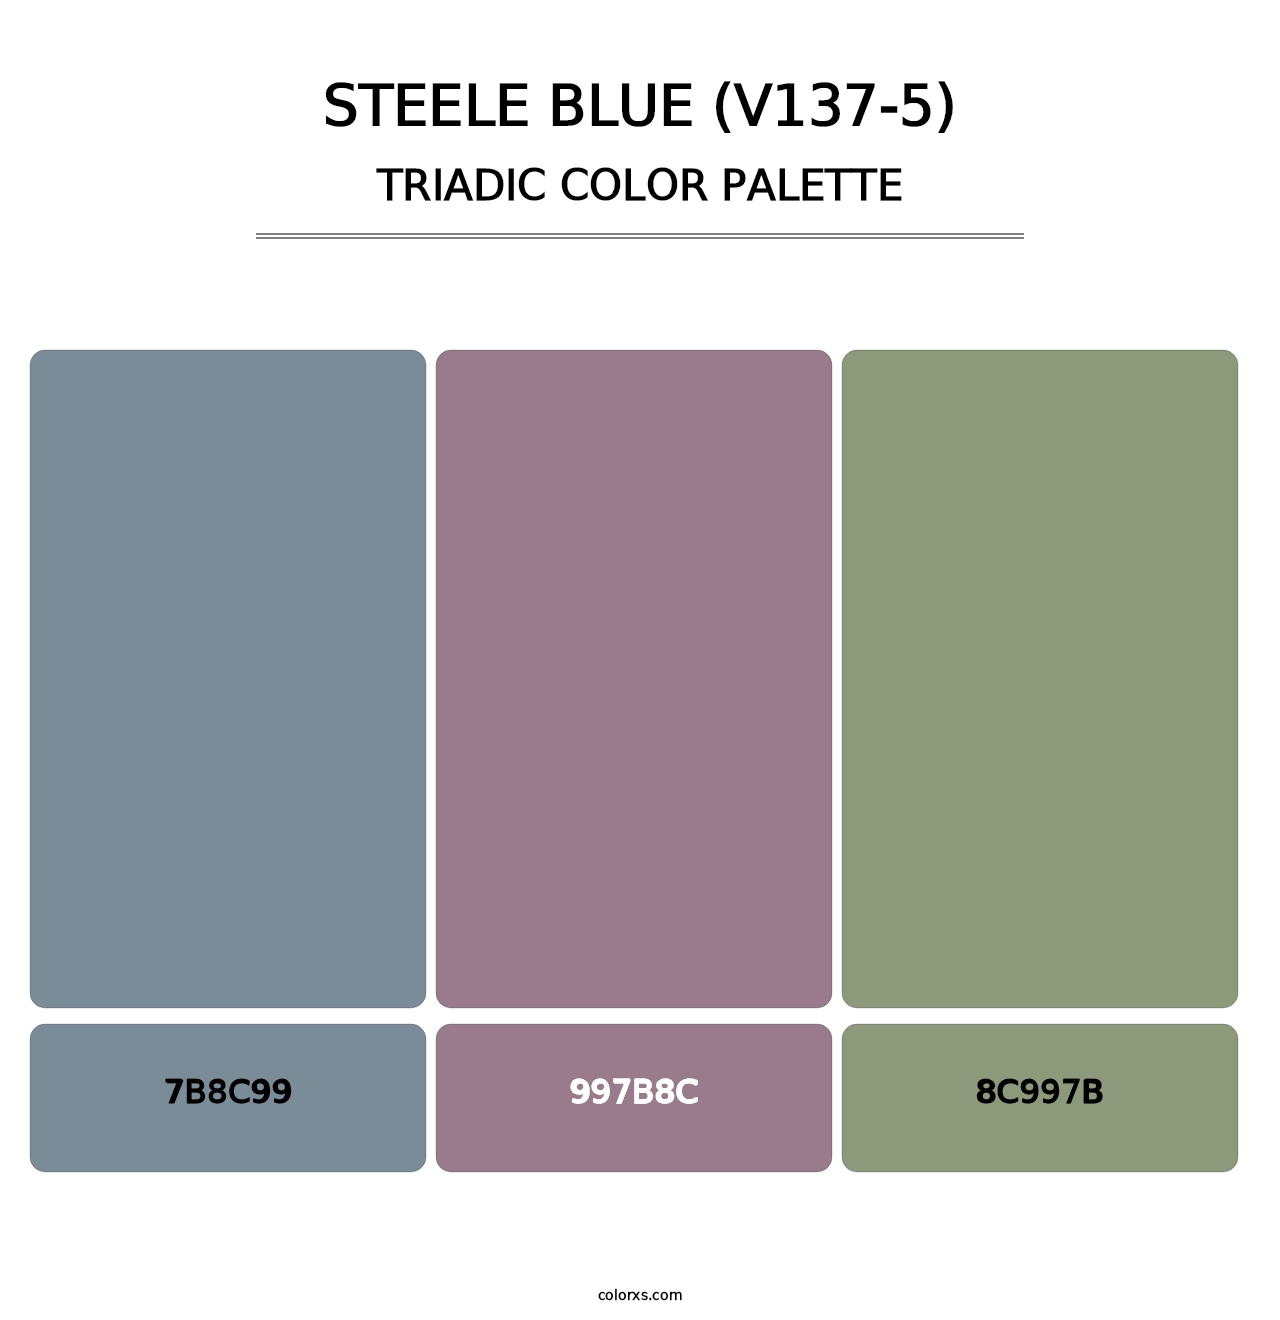 Steele Blue (V137-5) - Triadic Color Palette